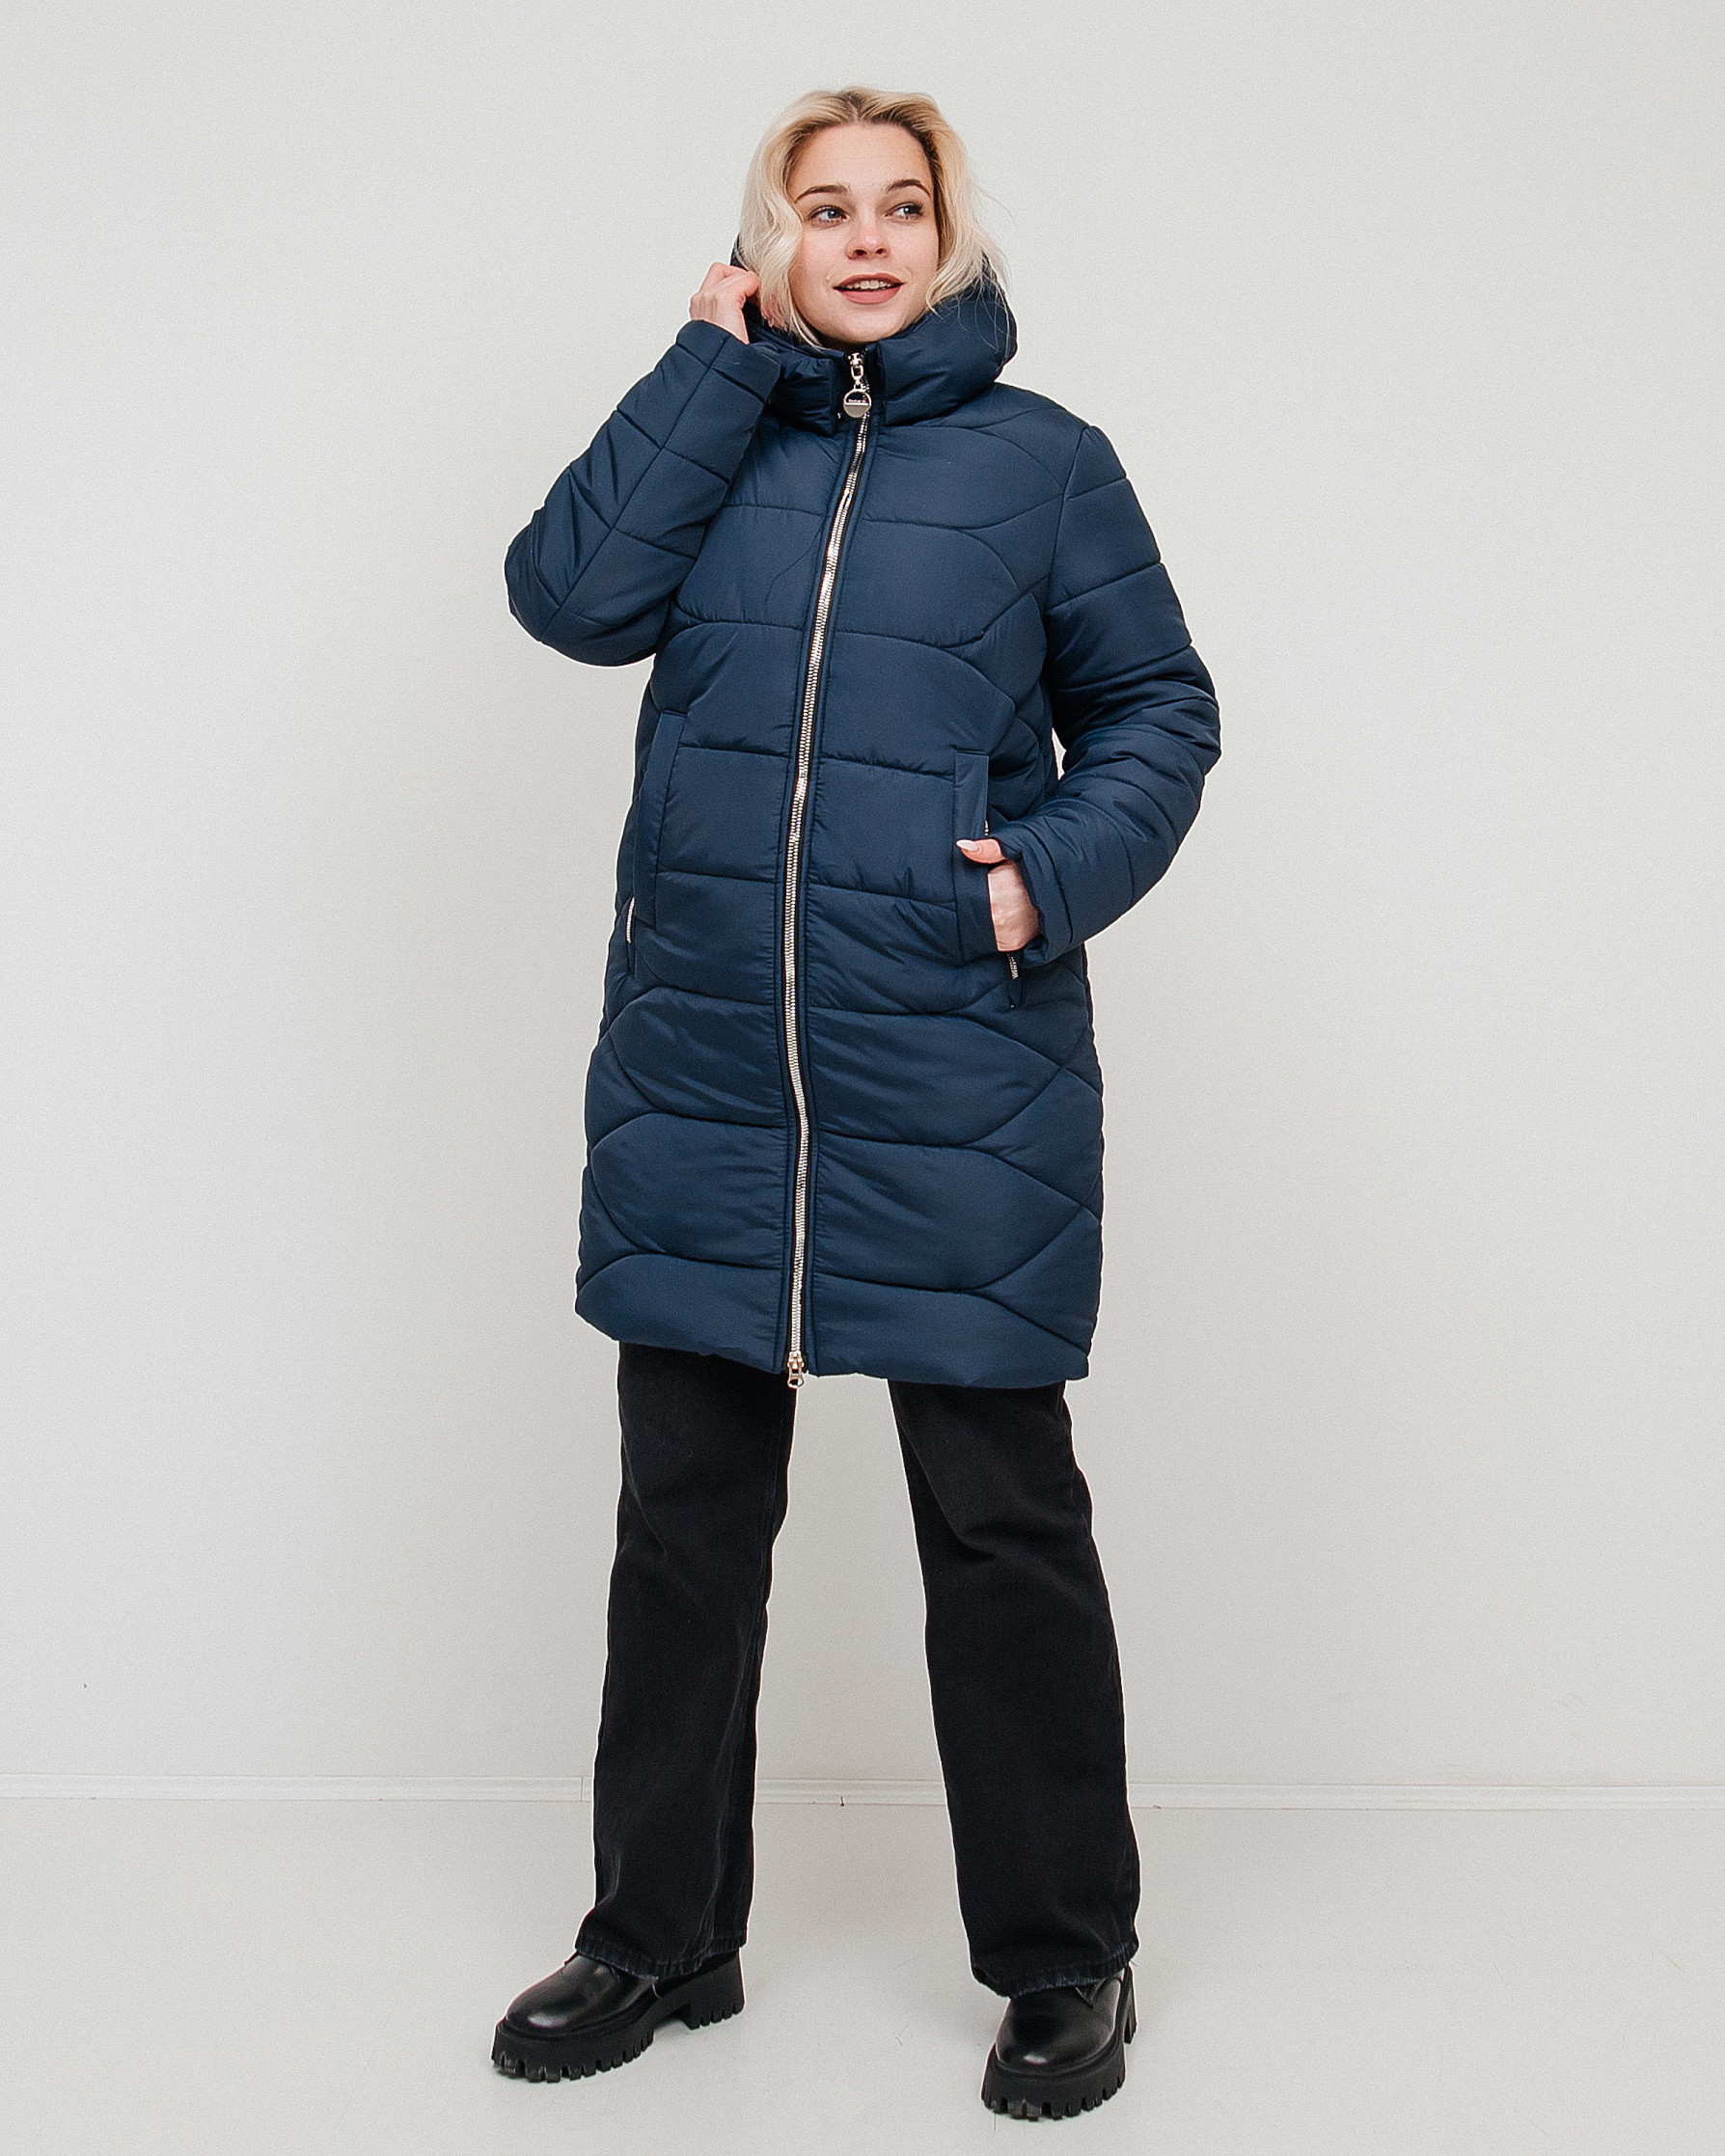 Жіночі зимові куртки оптом (Харків) – вигідна покупка для себе та бізнесу